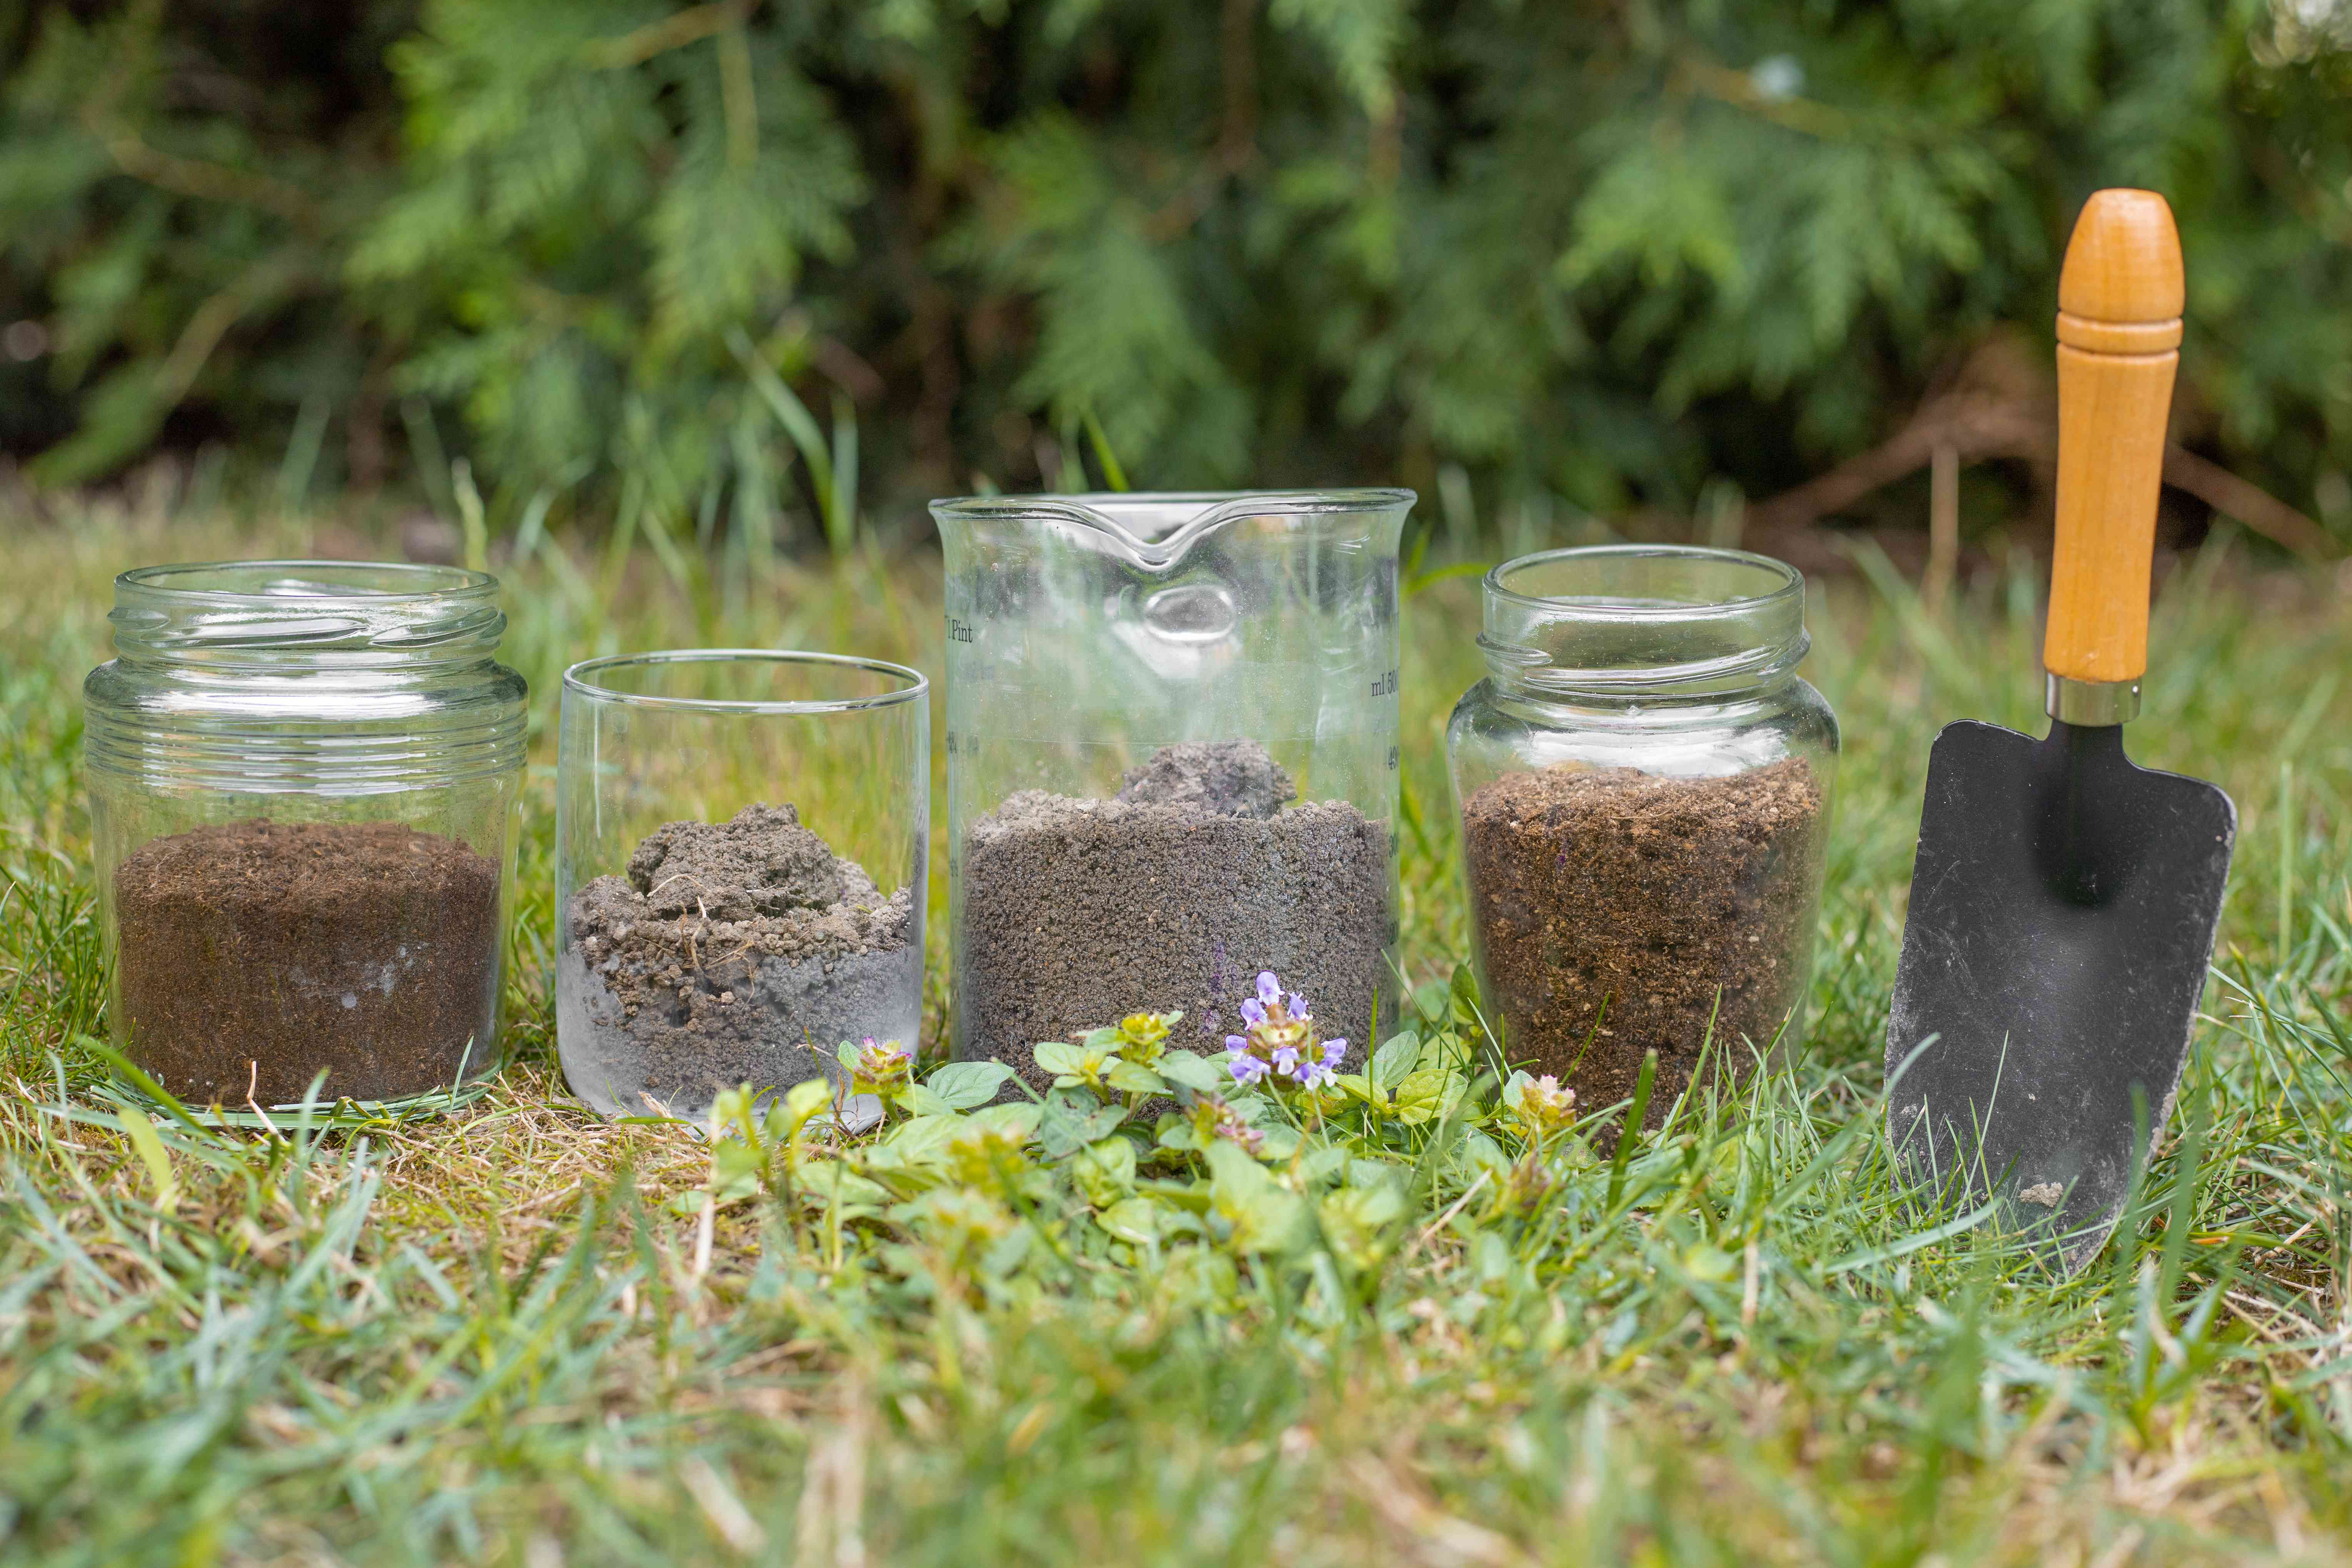 各种不同的盆栽土壤和泥土在玻璃容器外面旁边的园艺工具